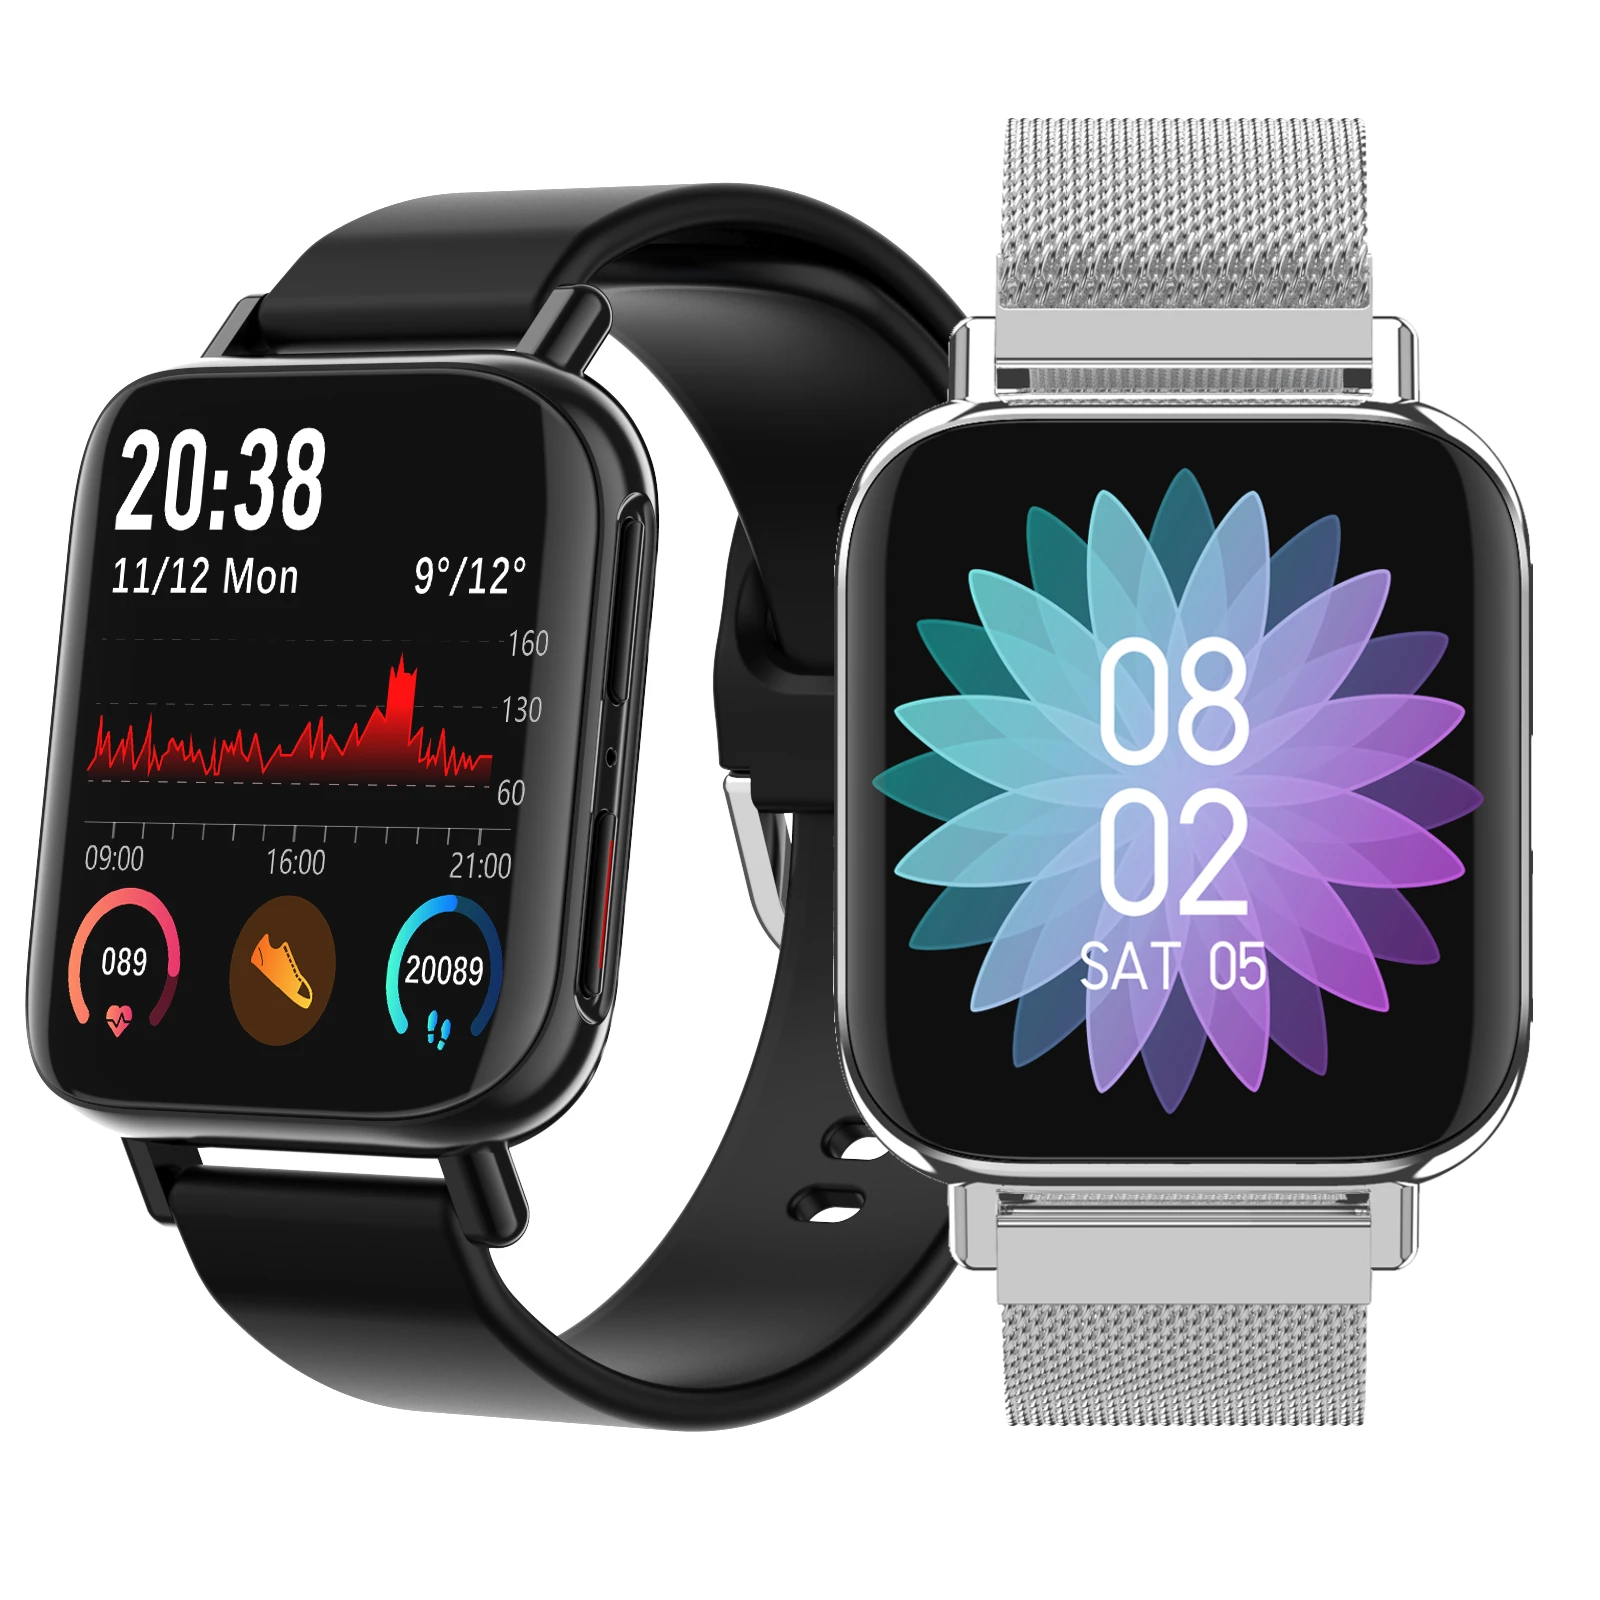 [bluetooth volání] LYNWO M96 1.54 '' Full Touch HD zakřivená obrazovka Duální UI Menu Přehrávání hudby Sportovní trénink Monitor srdečního tepu Monitor krevního tlaku Chytré hodinky